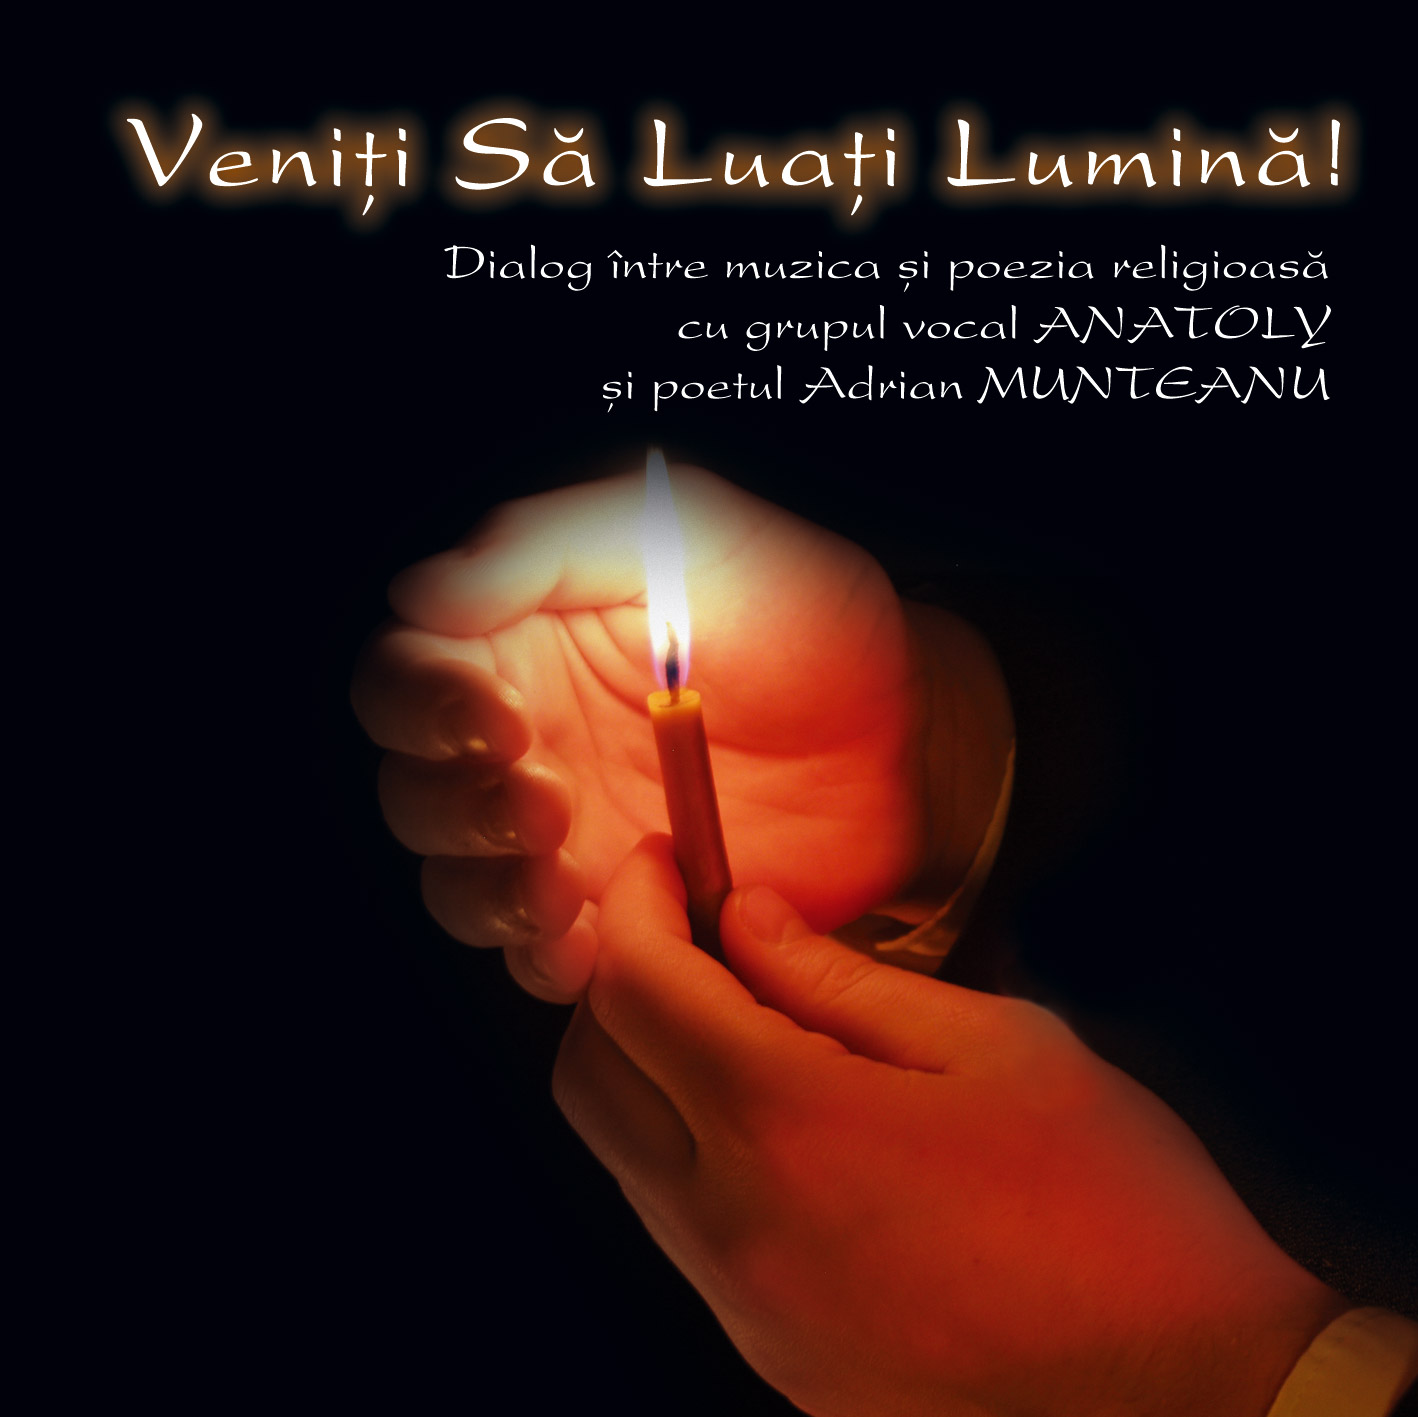 CD Anatoly - Veniti sa luati lumina